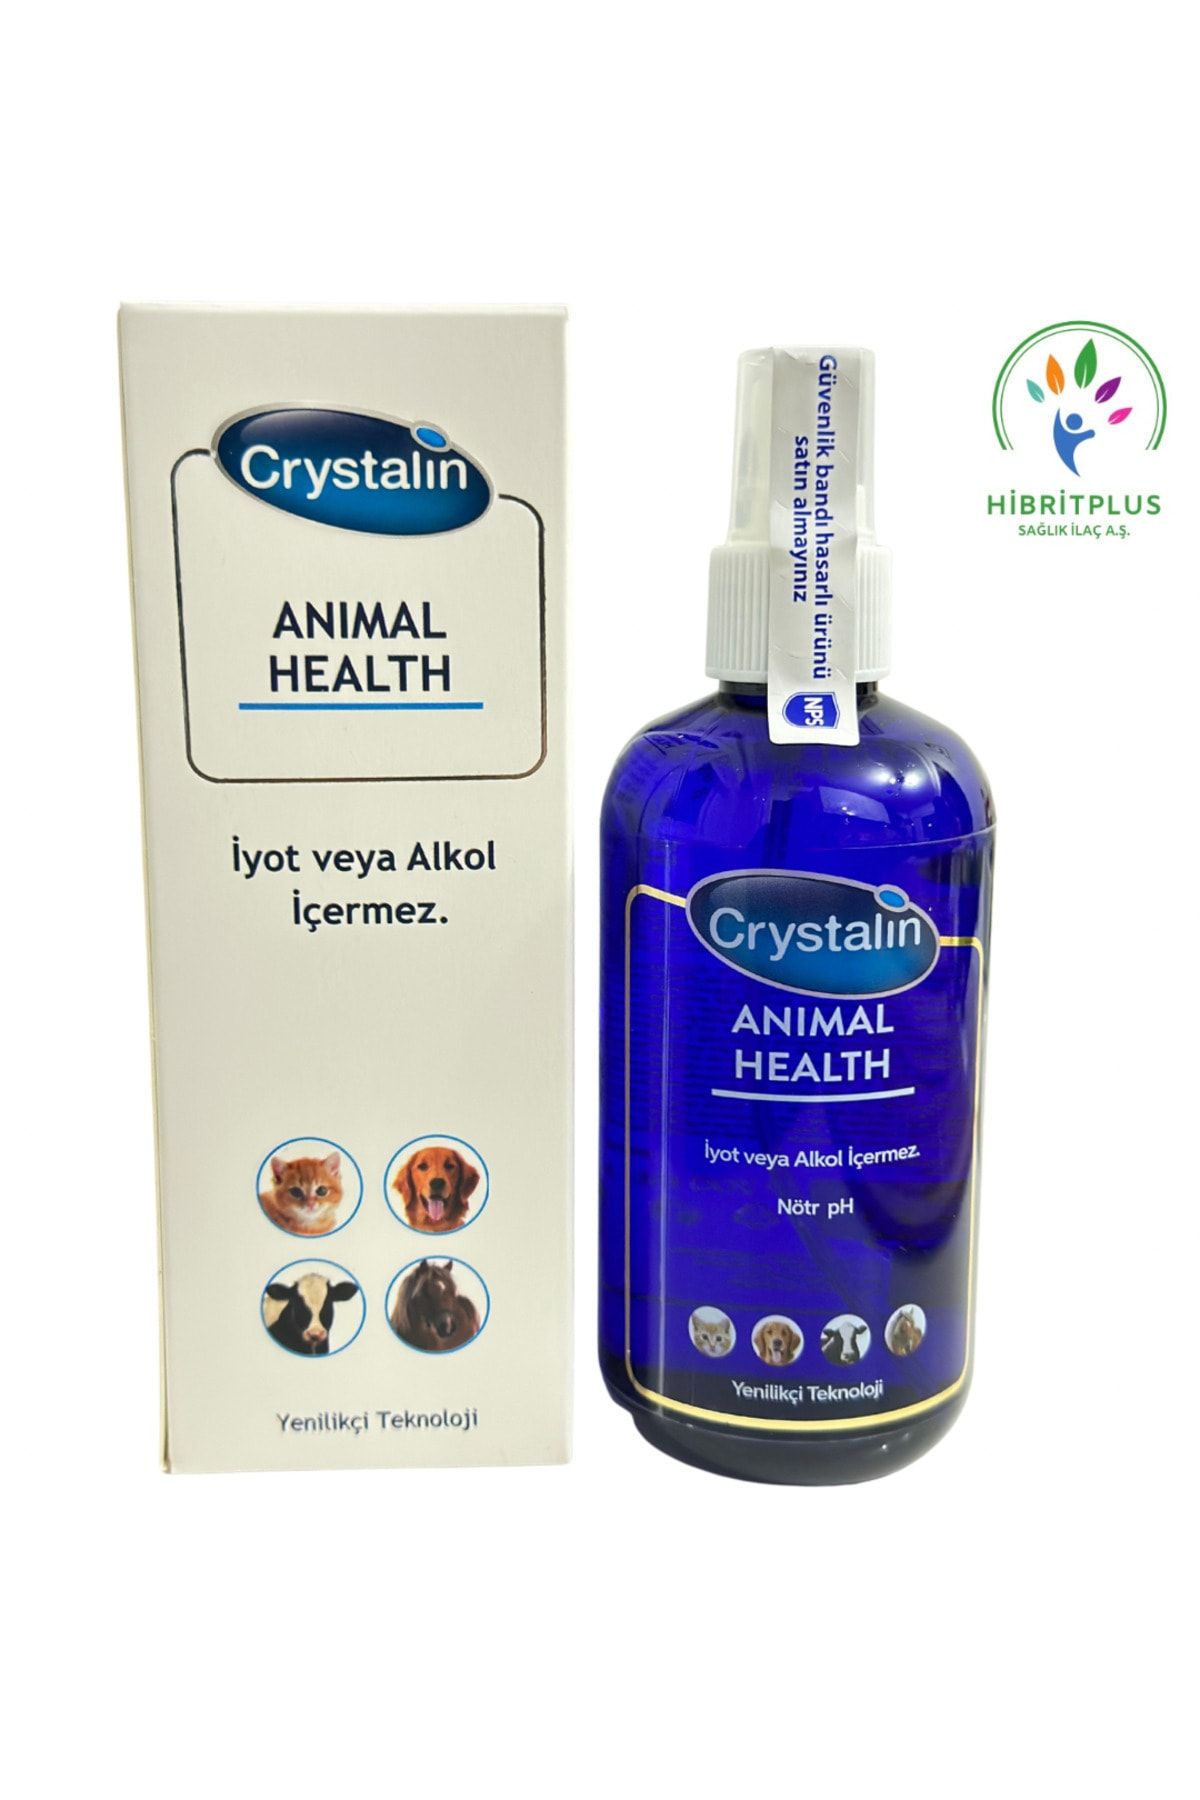 Crystalin Animal Health 200 Ml 2025 Miatlıdır